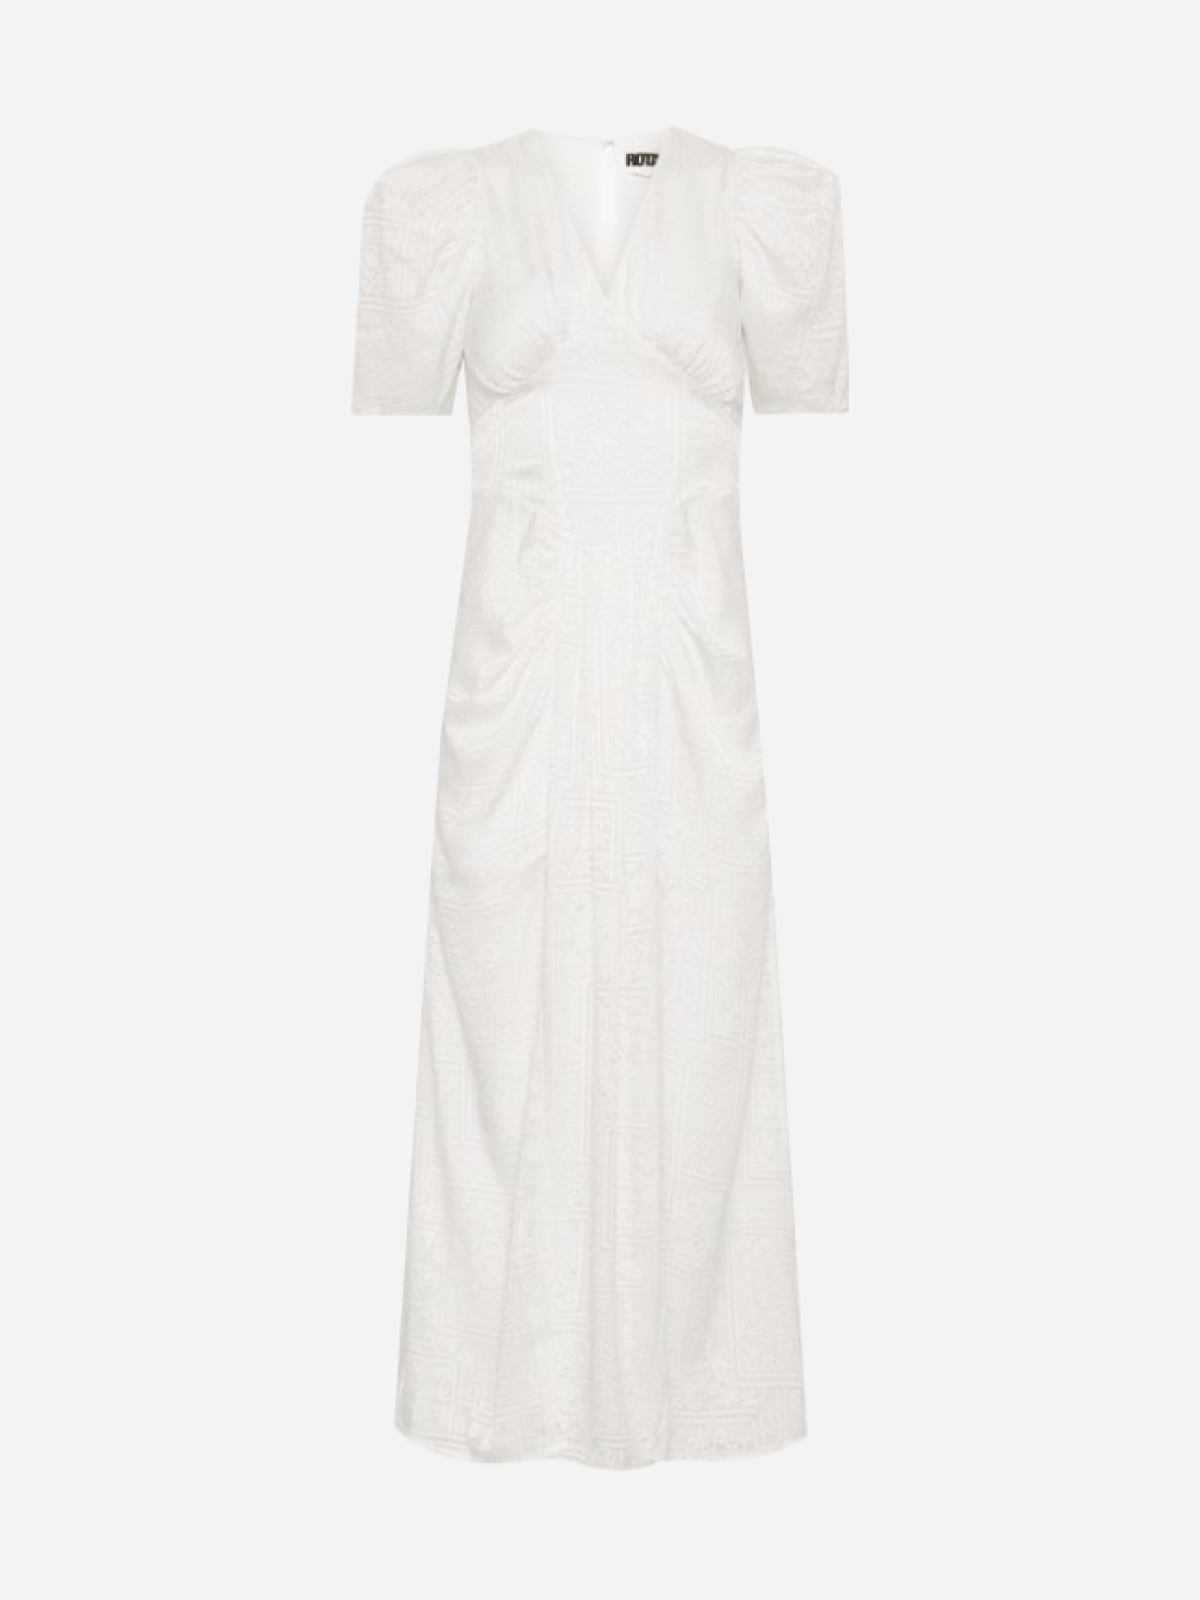 На свадьбу, после свадьбы или просто так: 20 лаконичных белых платьев на лето (фото 15)